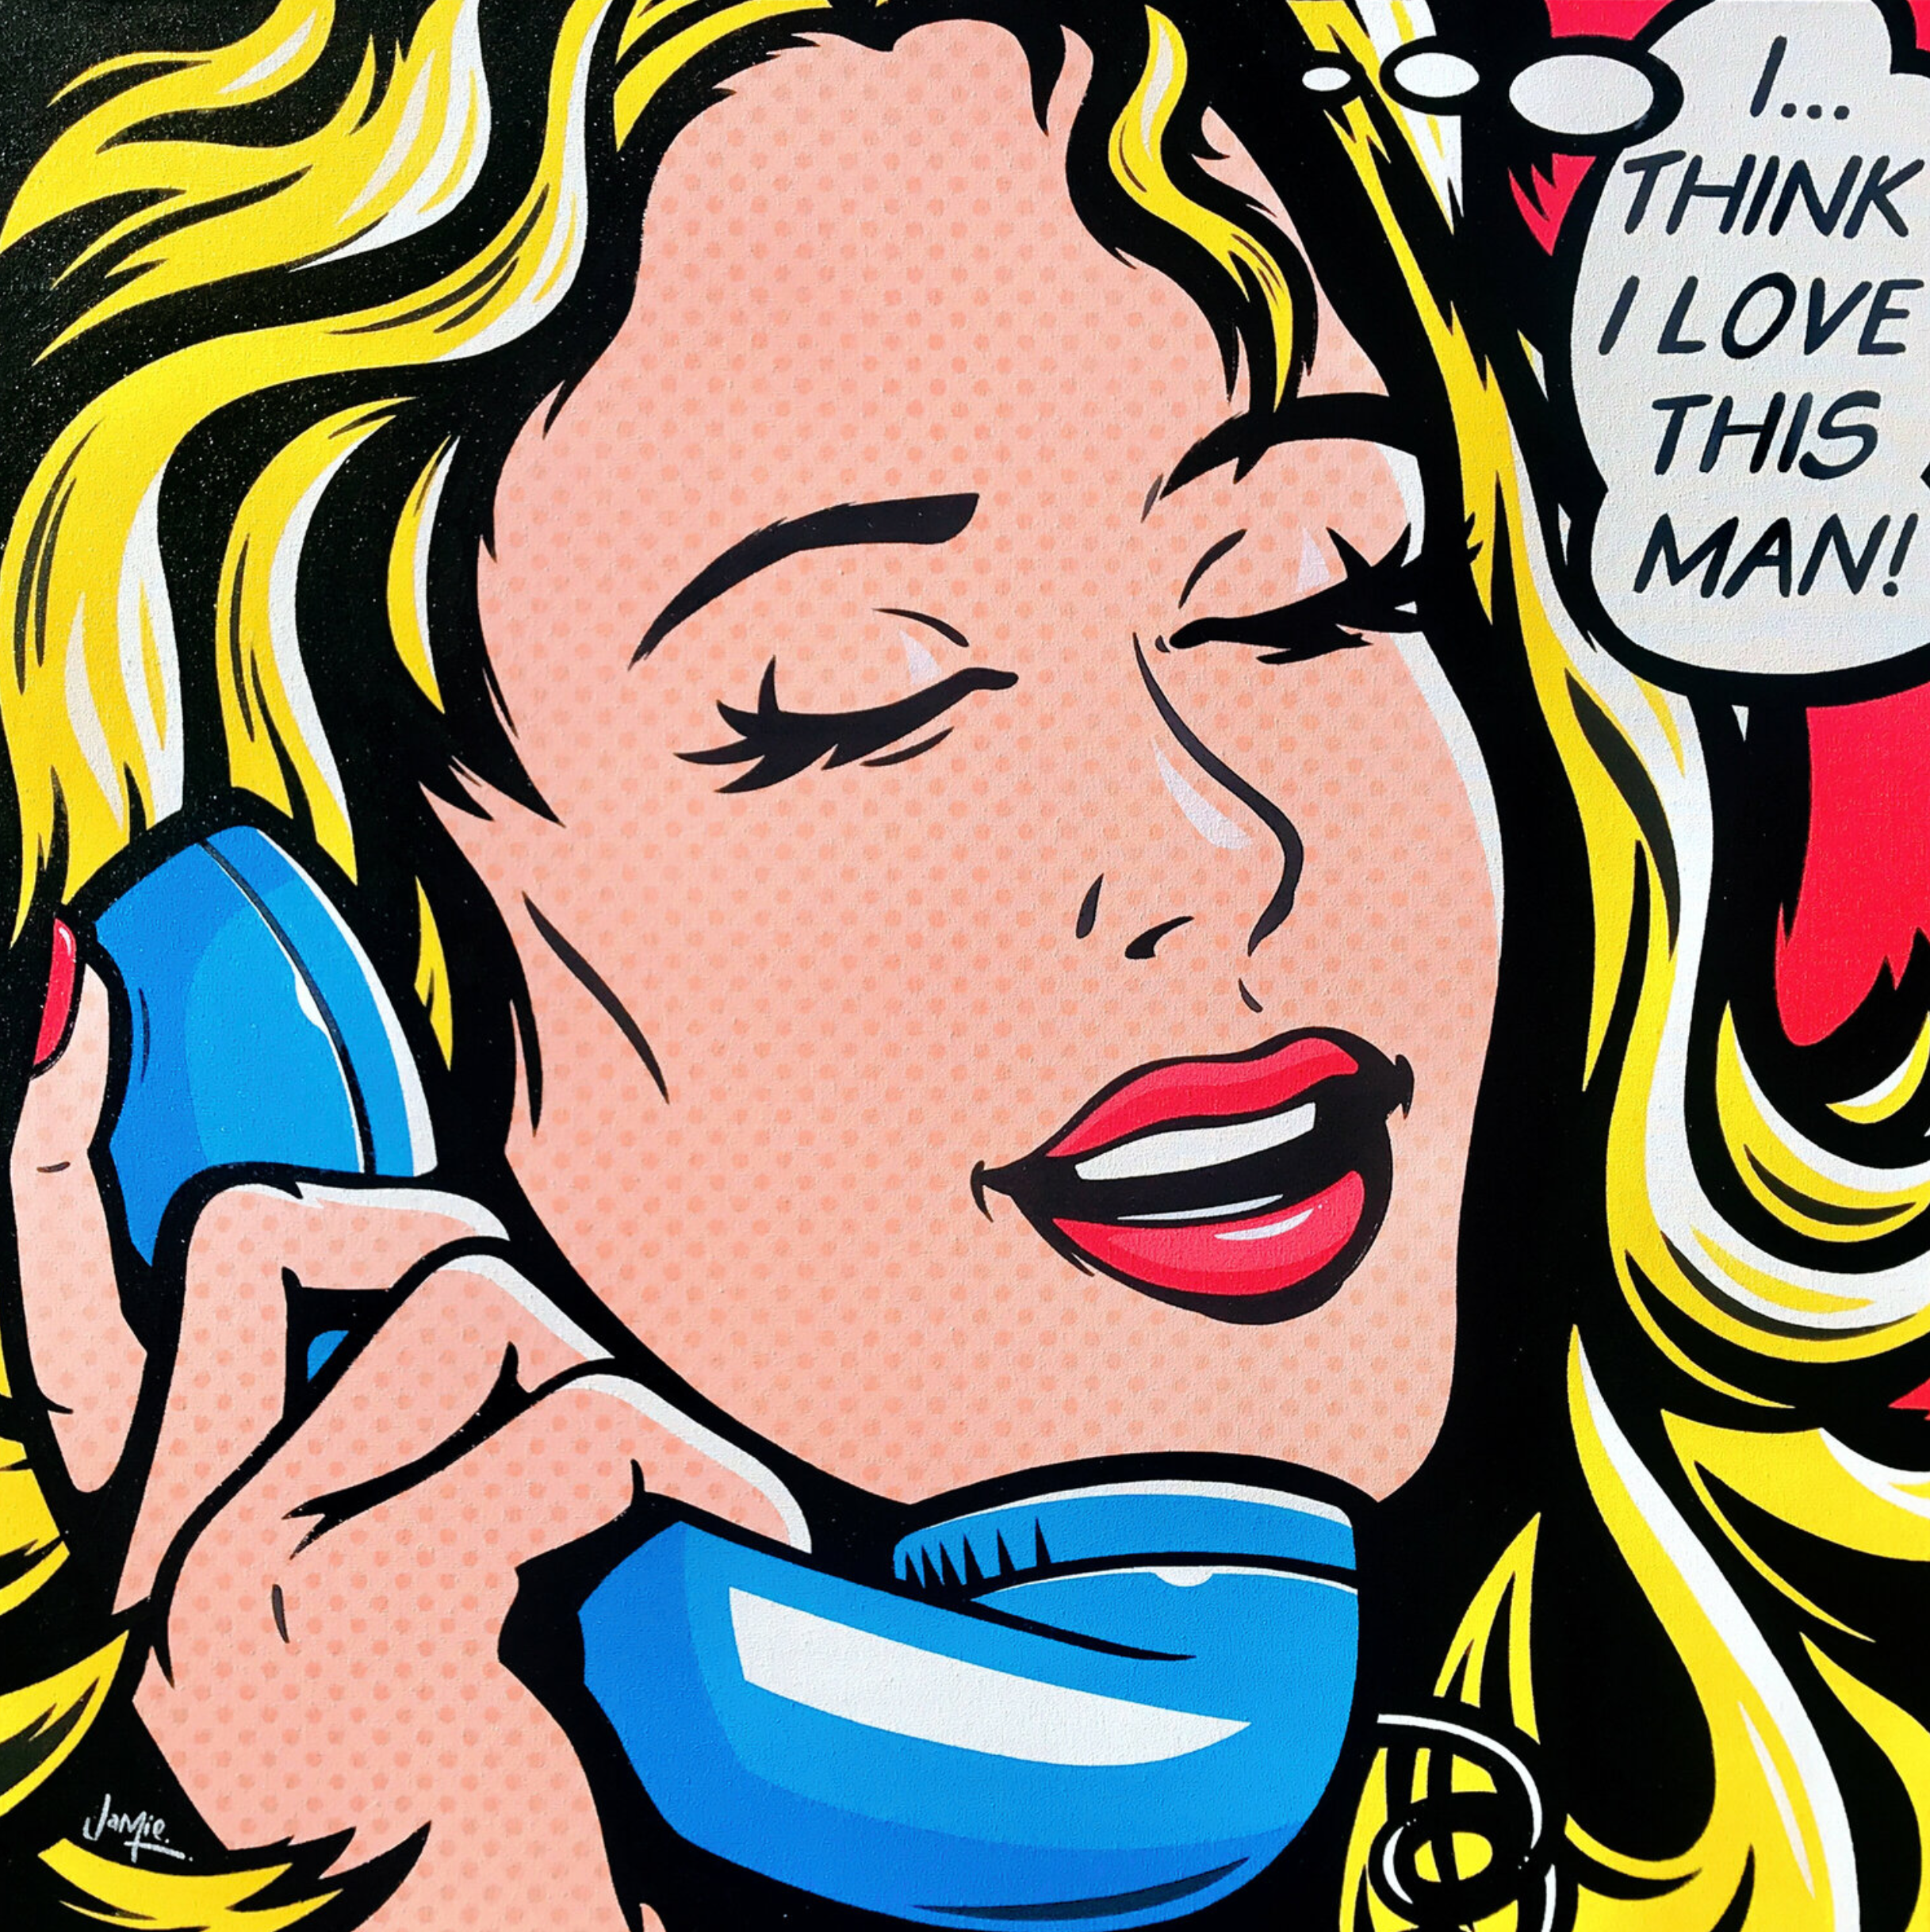 Quadro pop art in stile fumetto di Jamie Lee "I Think I Love This Man" con disegno originale, ragazza pop art al telefono. Una giovane e graziosa donna che parla a un vecchio telefono retrò si rende conto di essere innamorata dell'uomo con cui sta parlando.